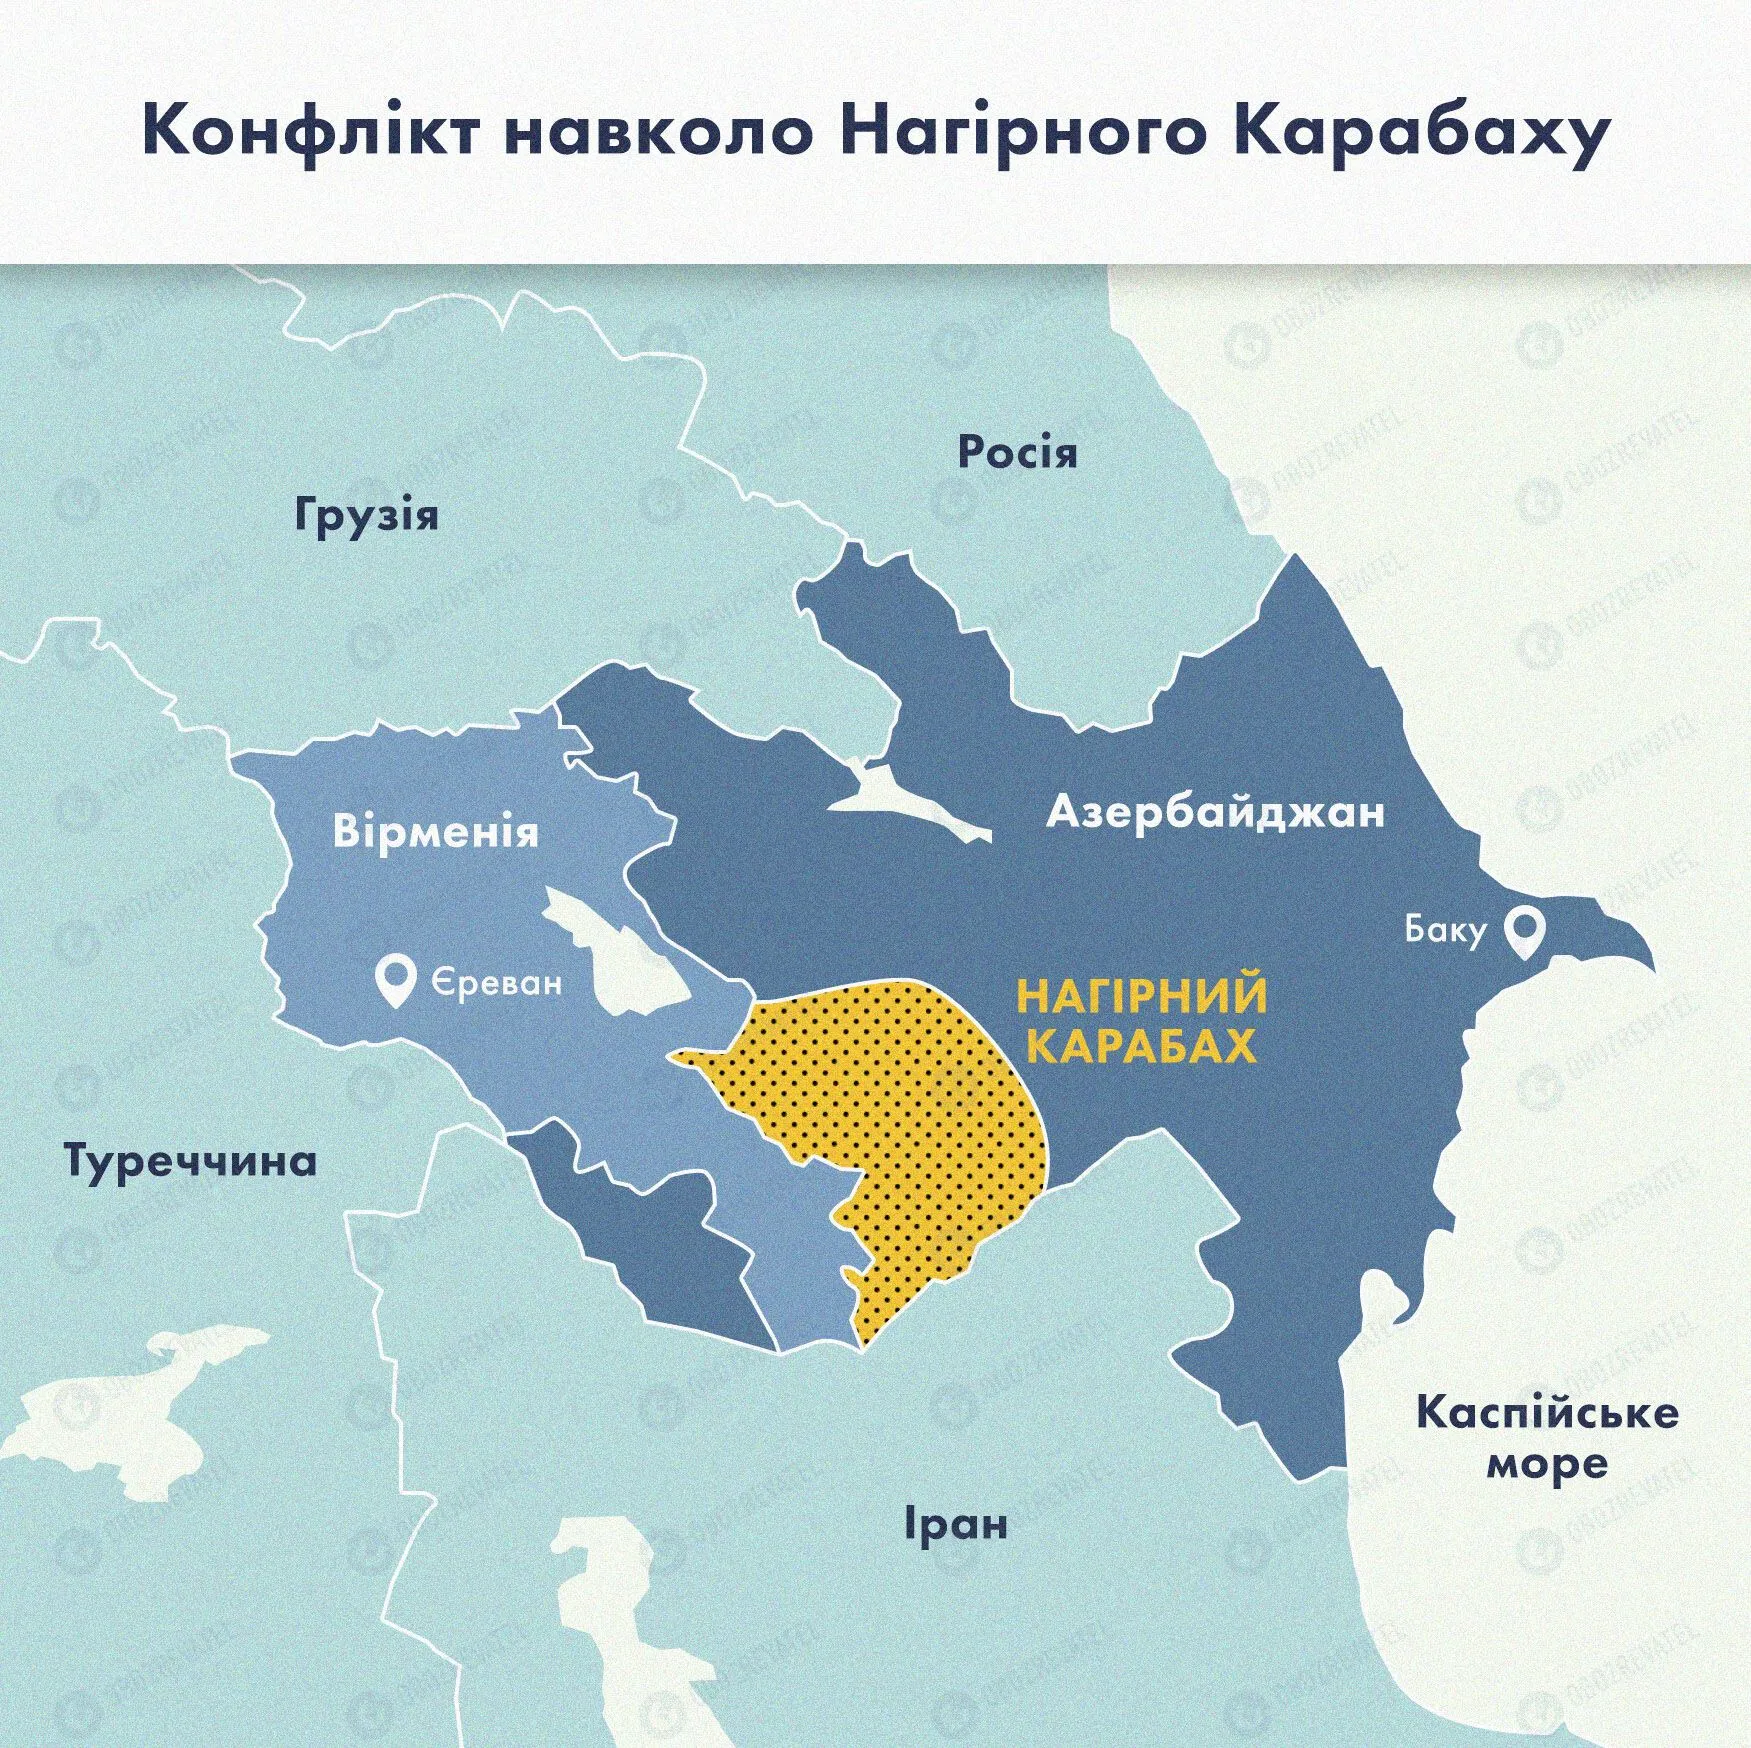 Карта конфлікту навколо Нагірного Карабаху